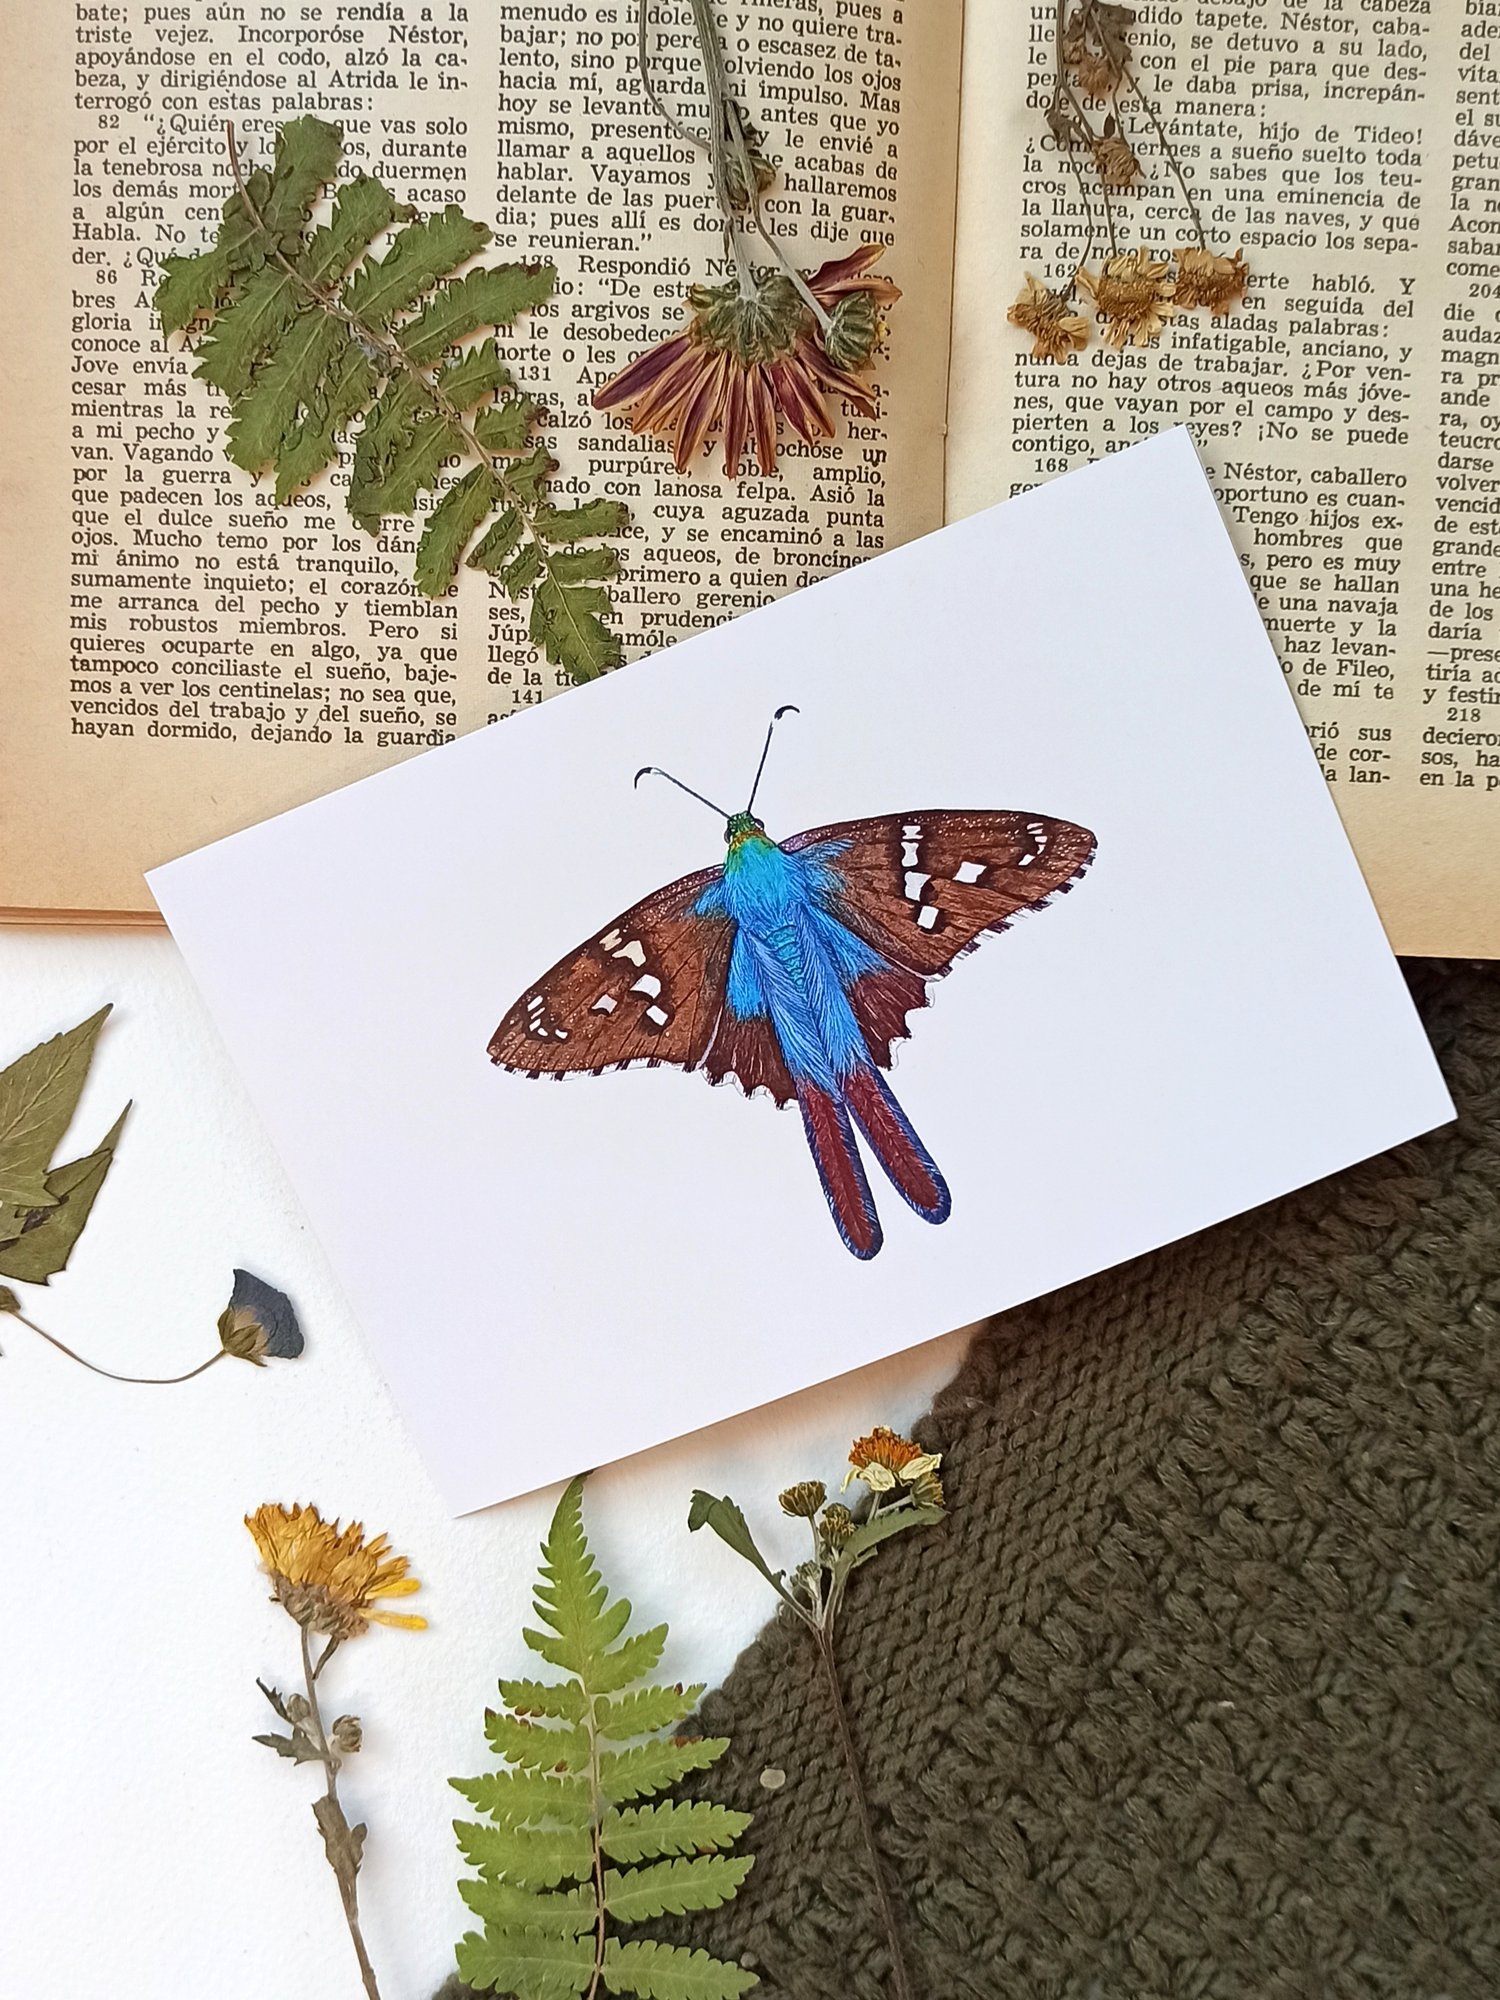 Image of Fall Butterflies Postcard Set 